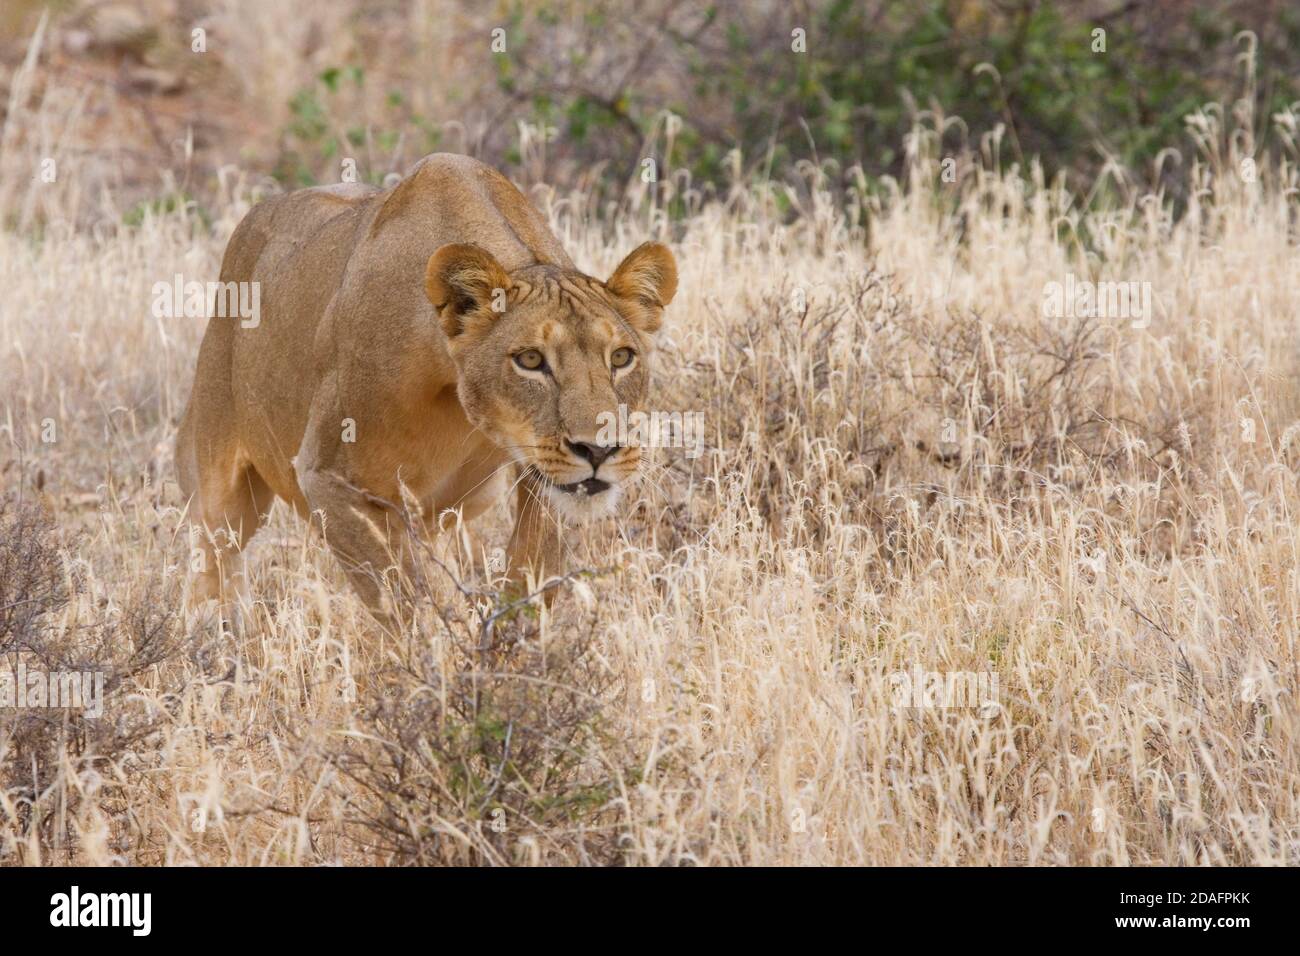 Weibchen, die im Gras auflädt, Samburu Nature Reserve, Kenia Stockfoto